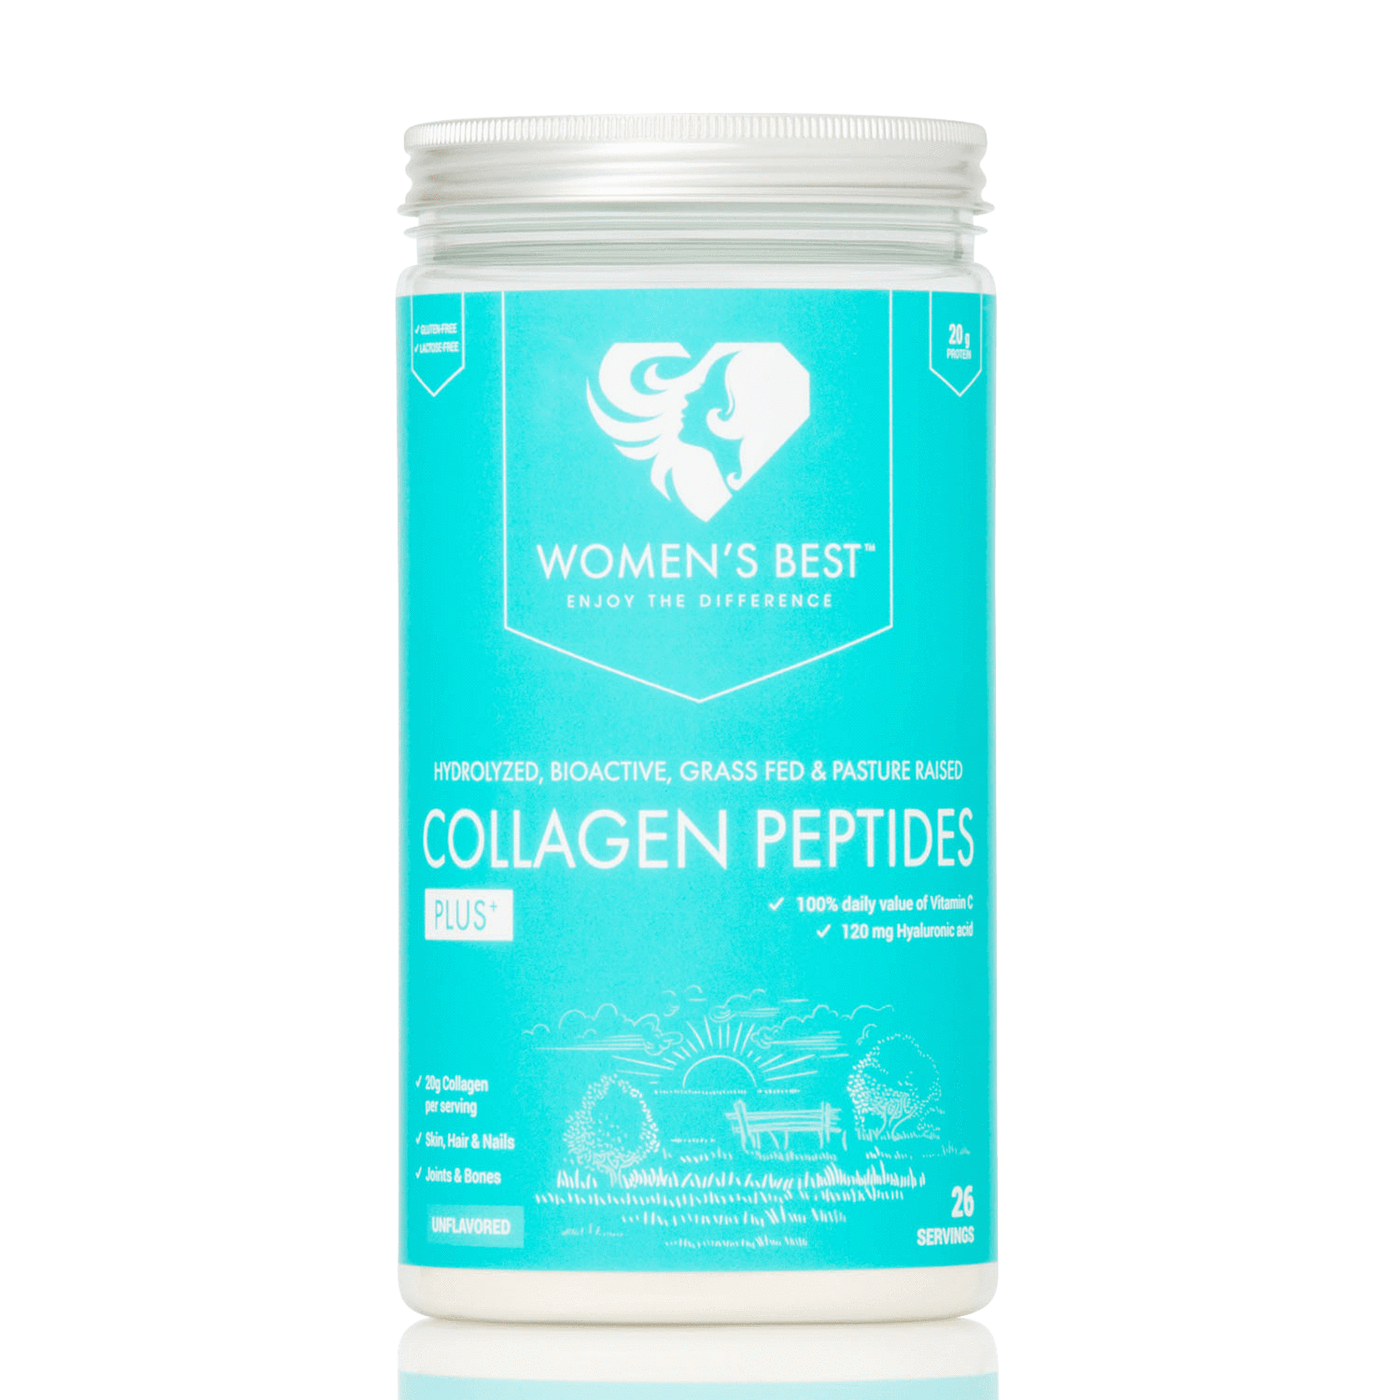 Women's Best Collagen Peptides Plus+